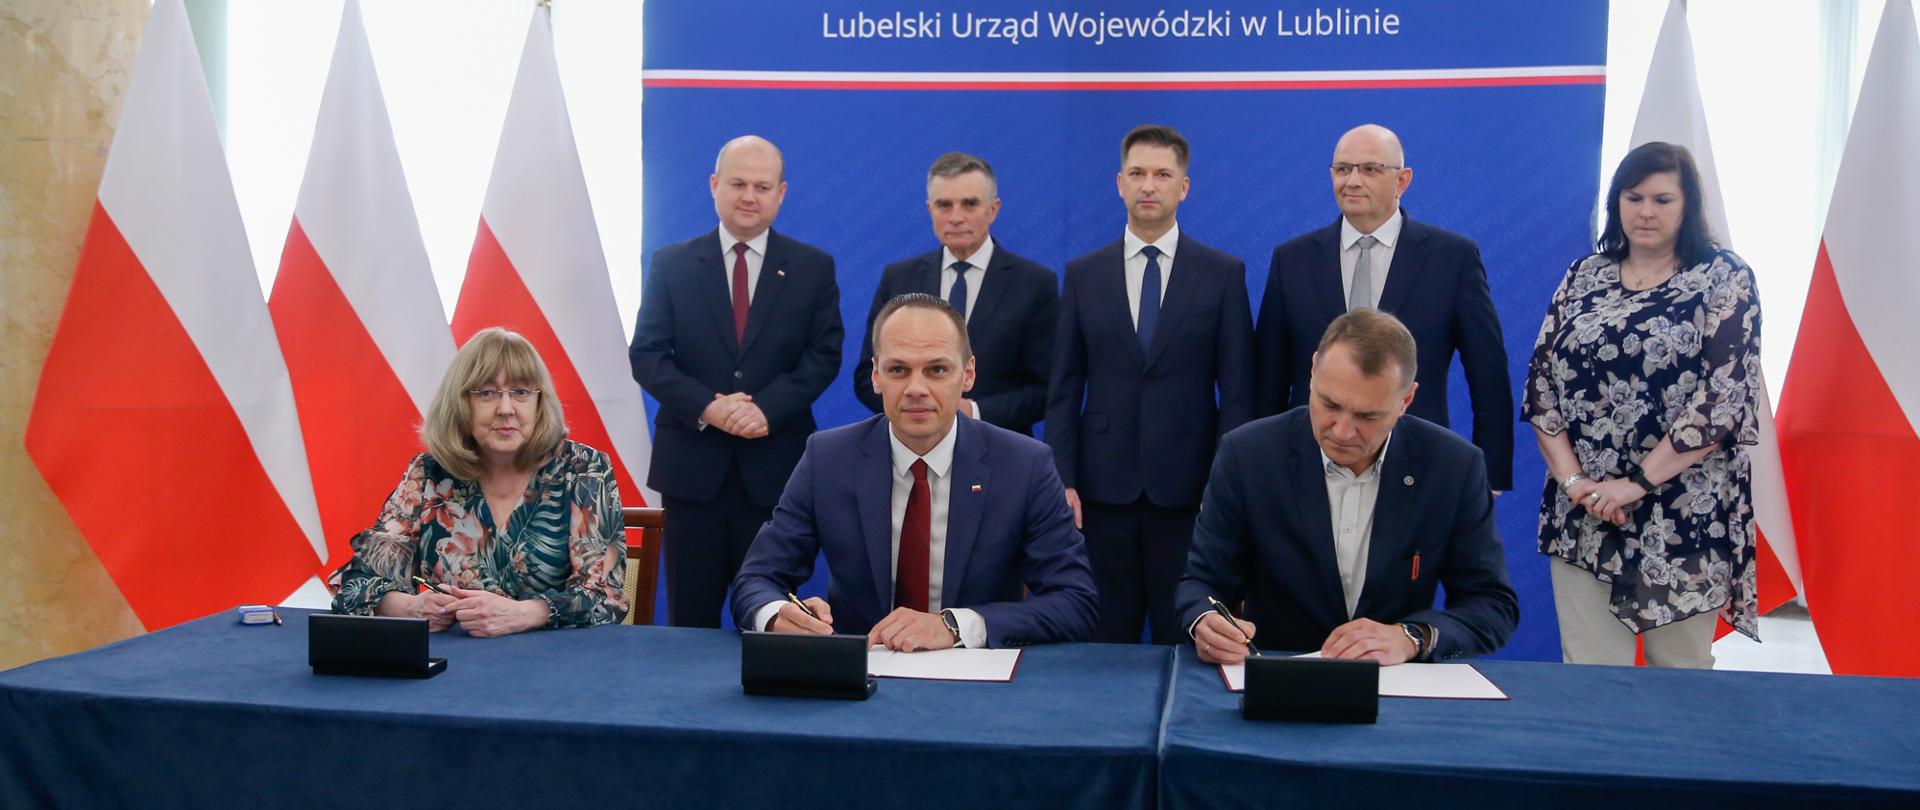 Inwestycje samorządowe w województwie lubelskim z rządowym wsparciem